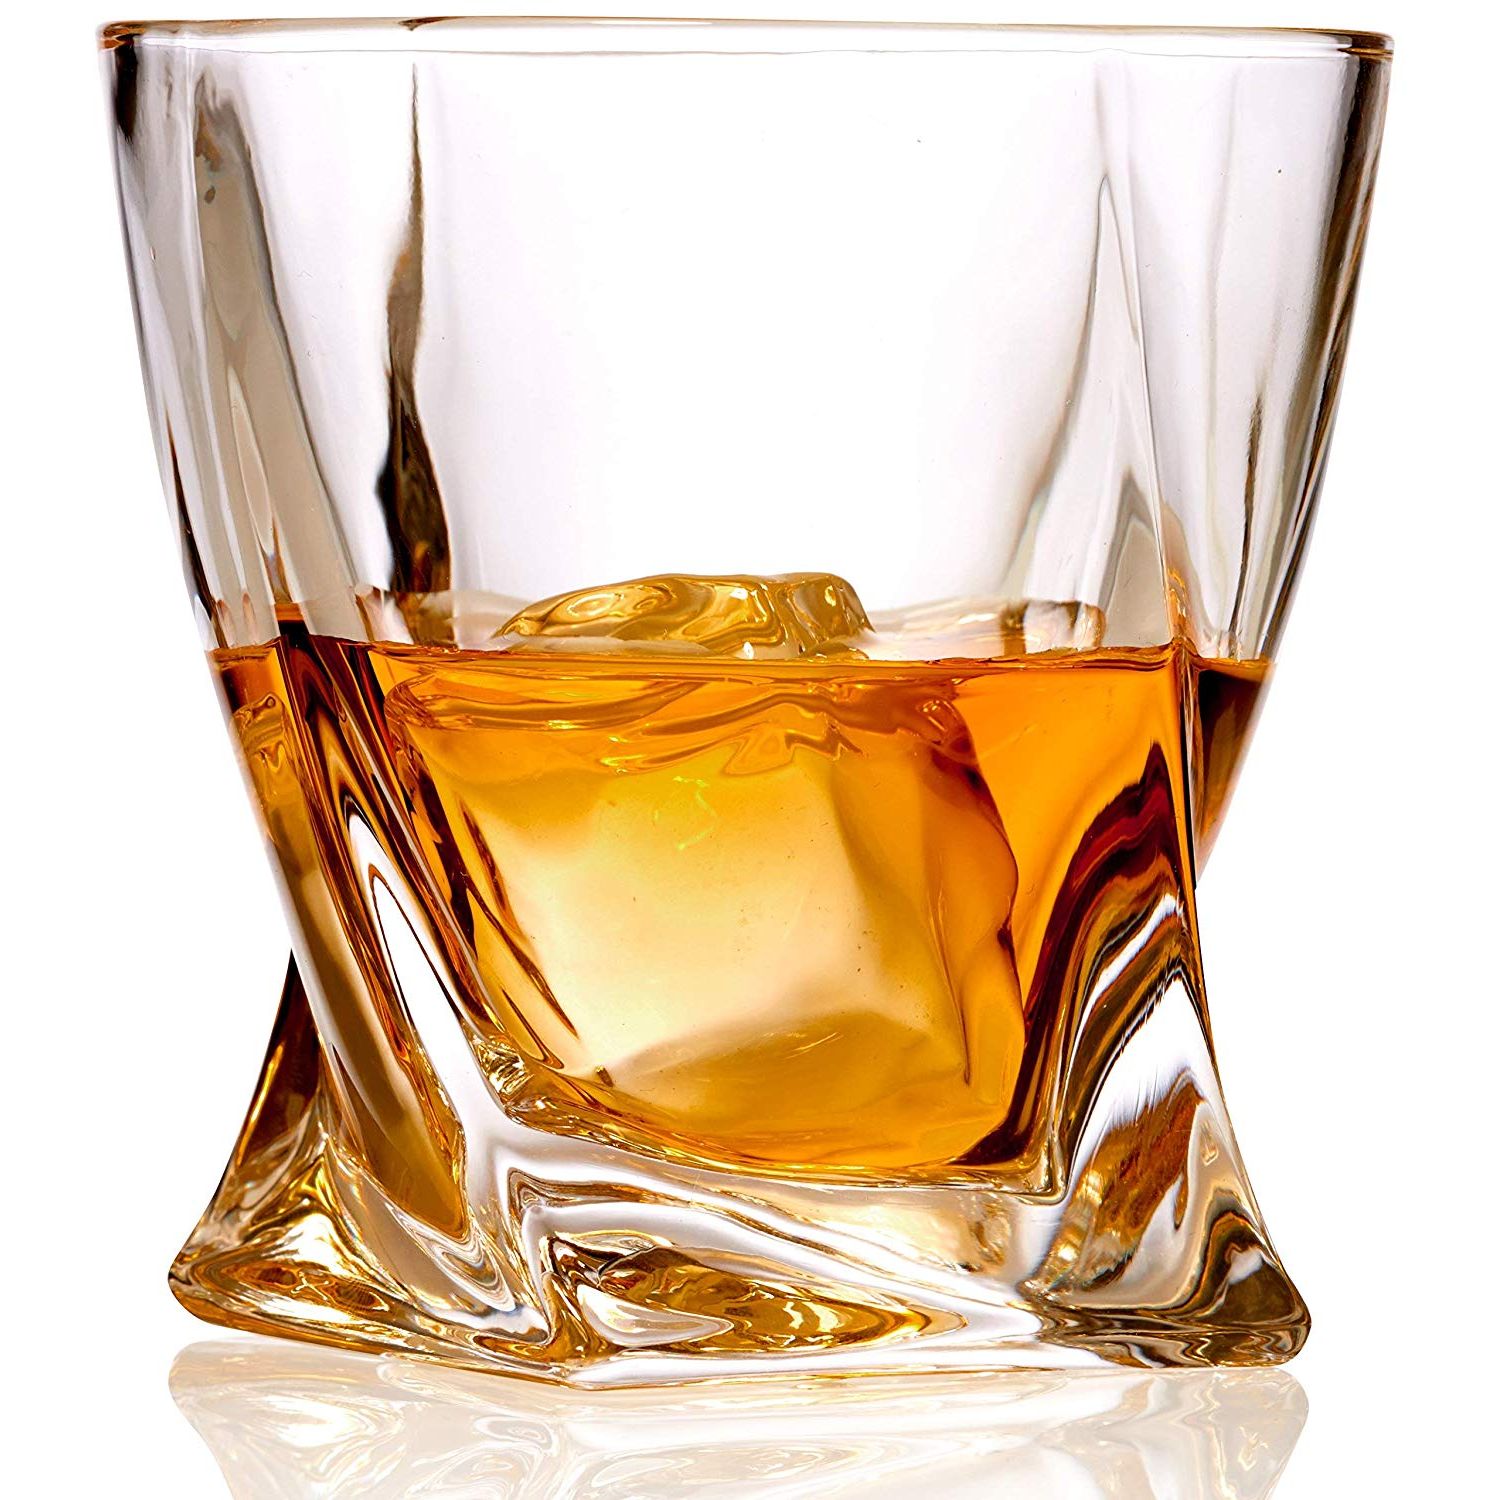 mikro yetkilendirilmiş hiçliğin ortasında viski bardağı modelleri akut ...